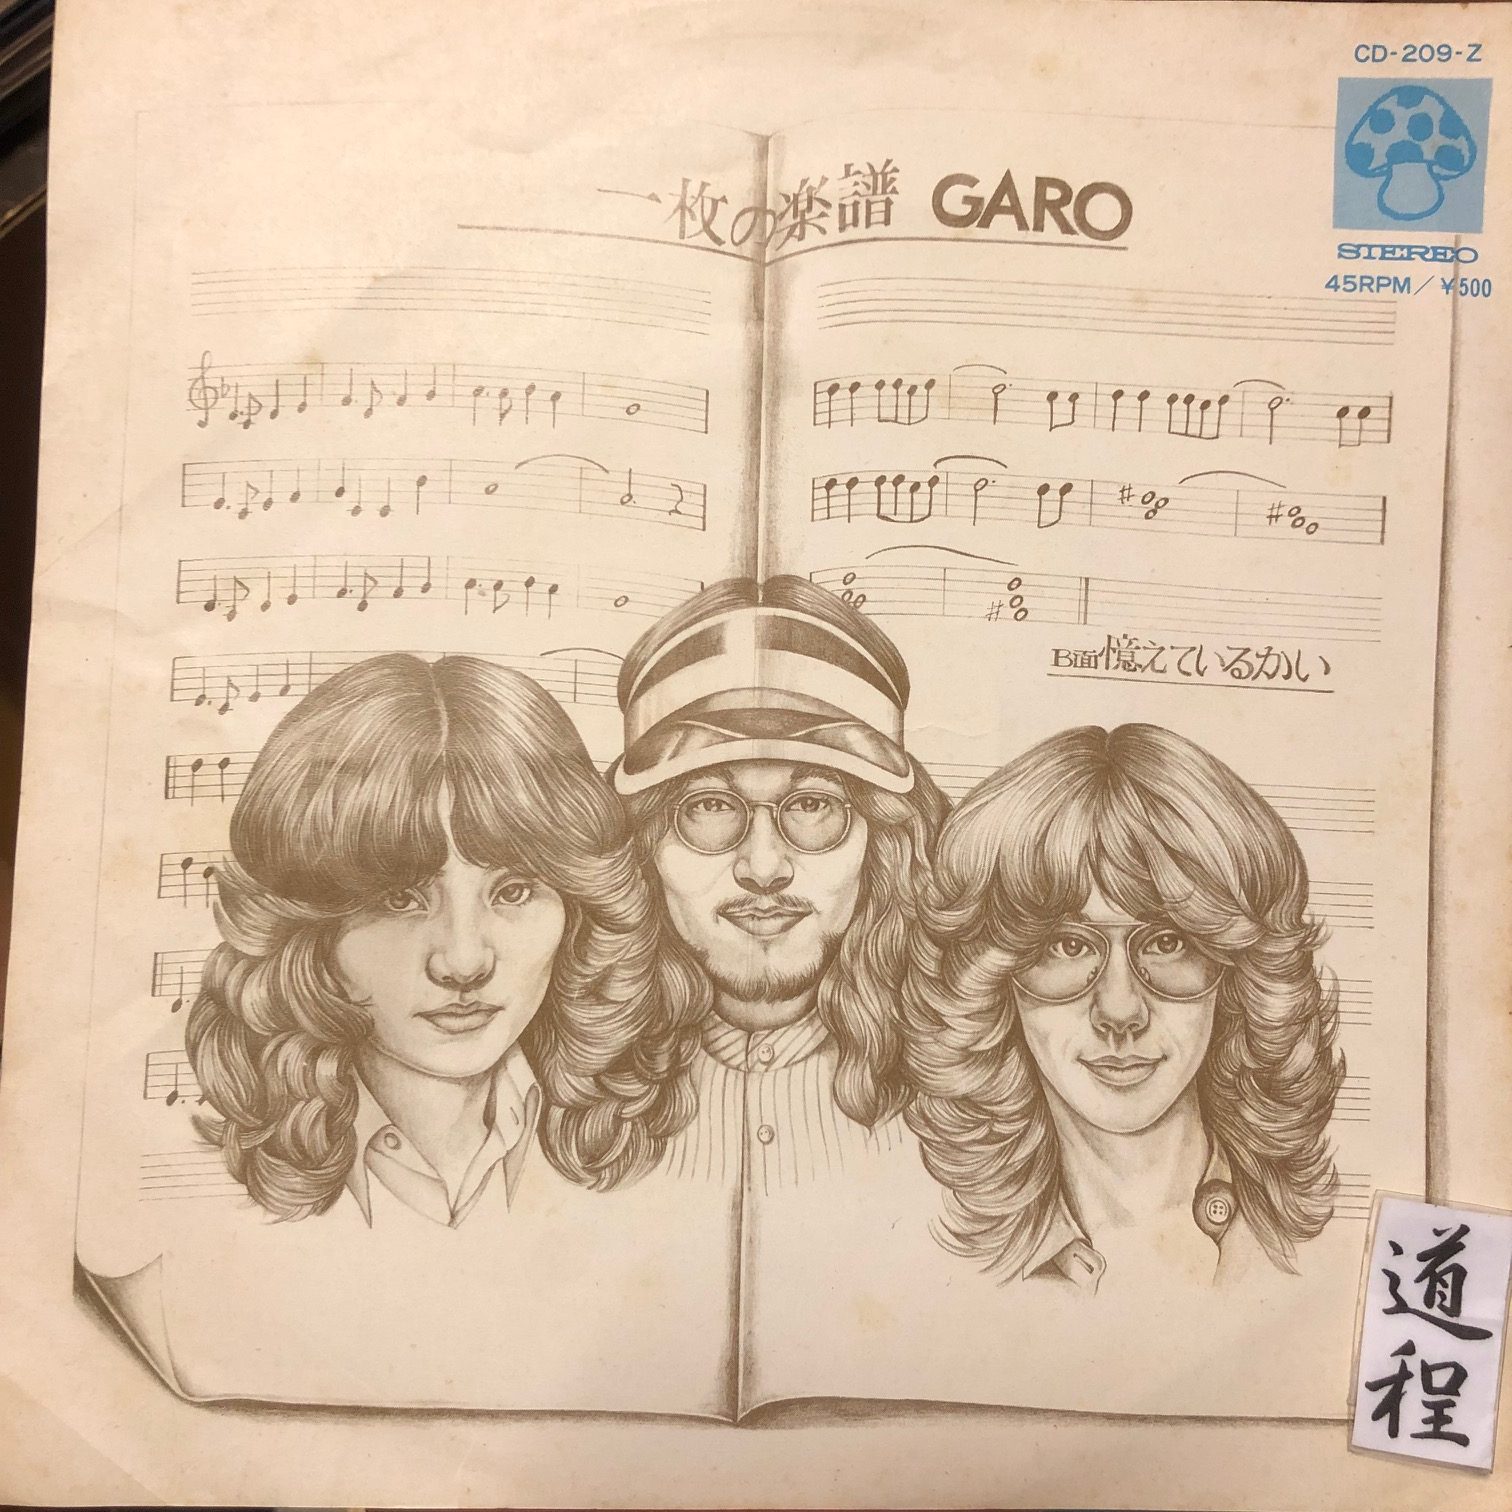 Garo – 一枚の楽譜 (CD-209-Z)